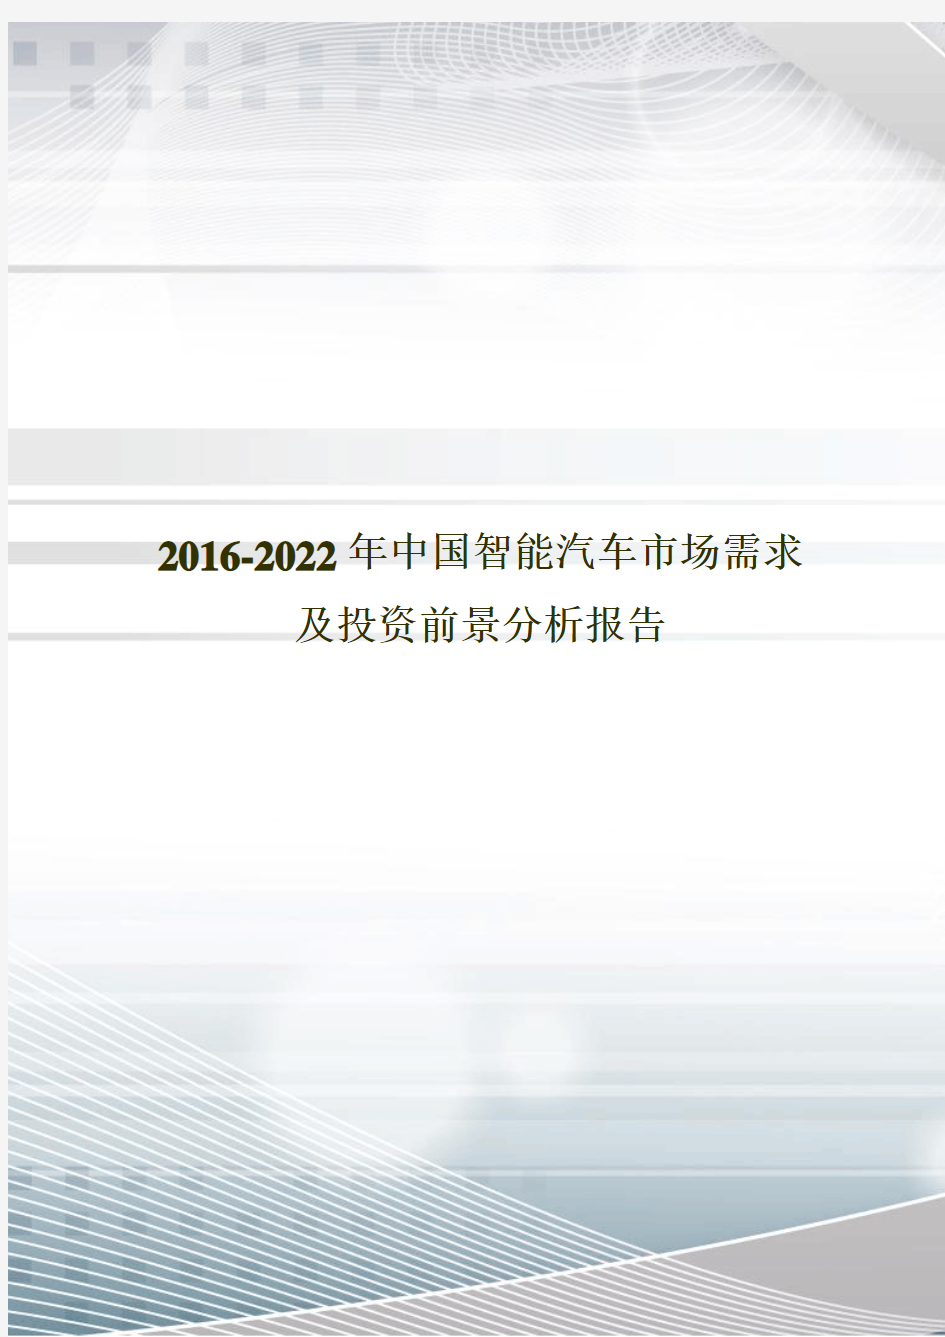 2016-2022年中国智能汽车市场需求及投资前景分析报告